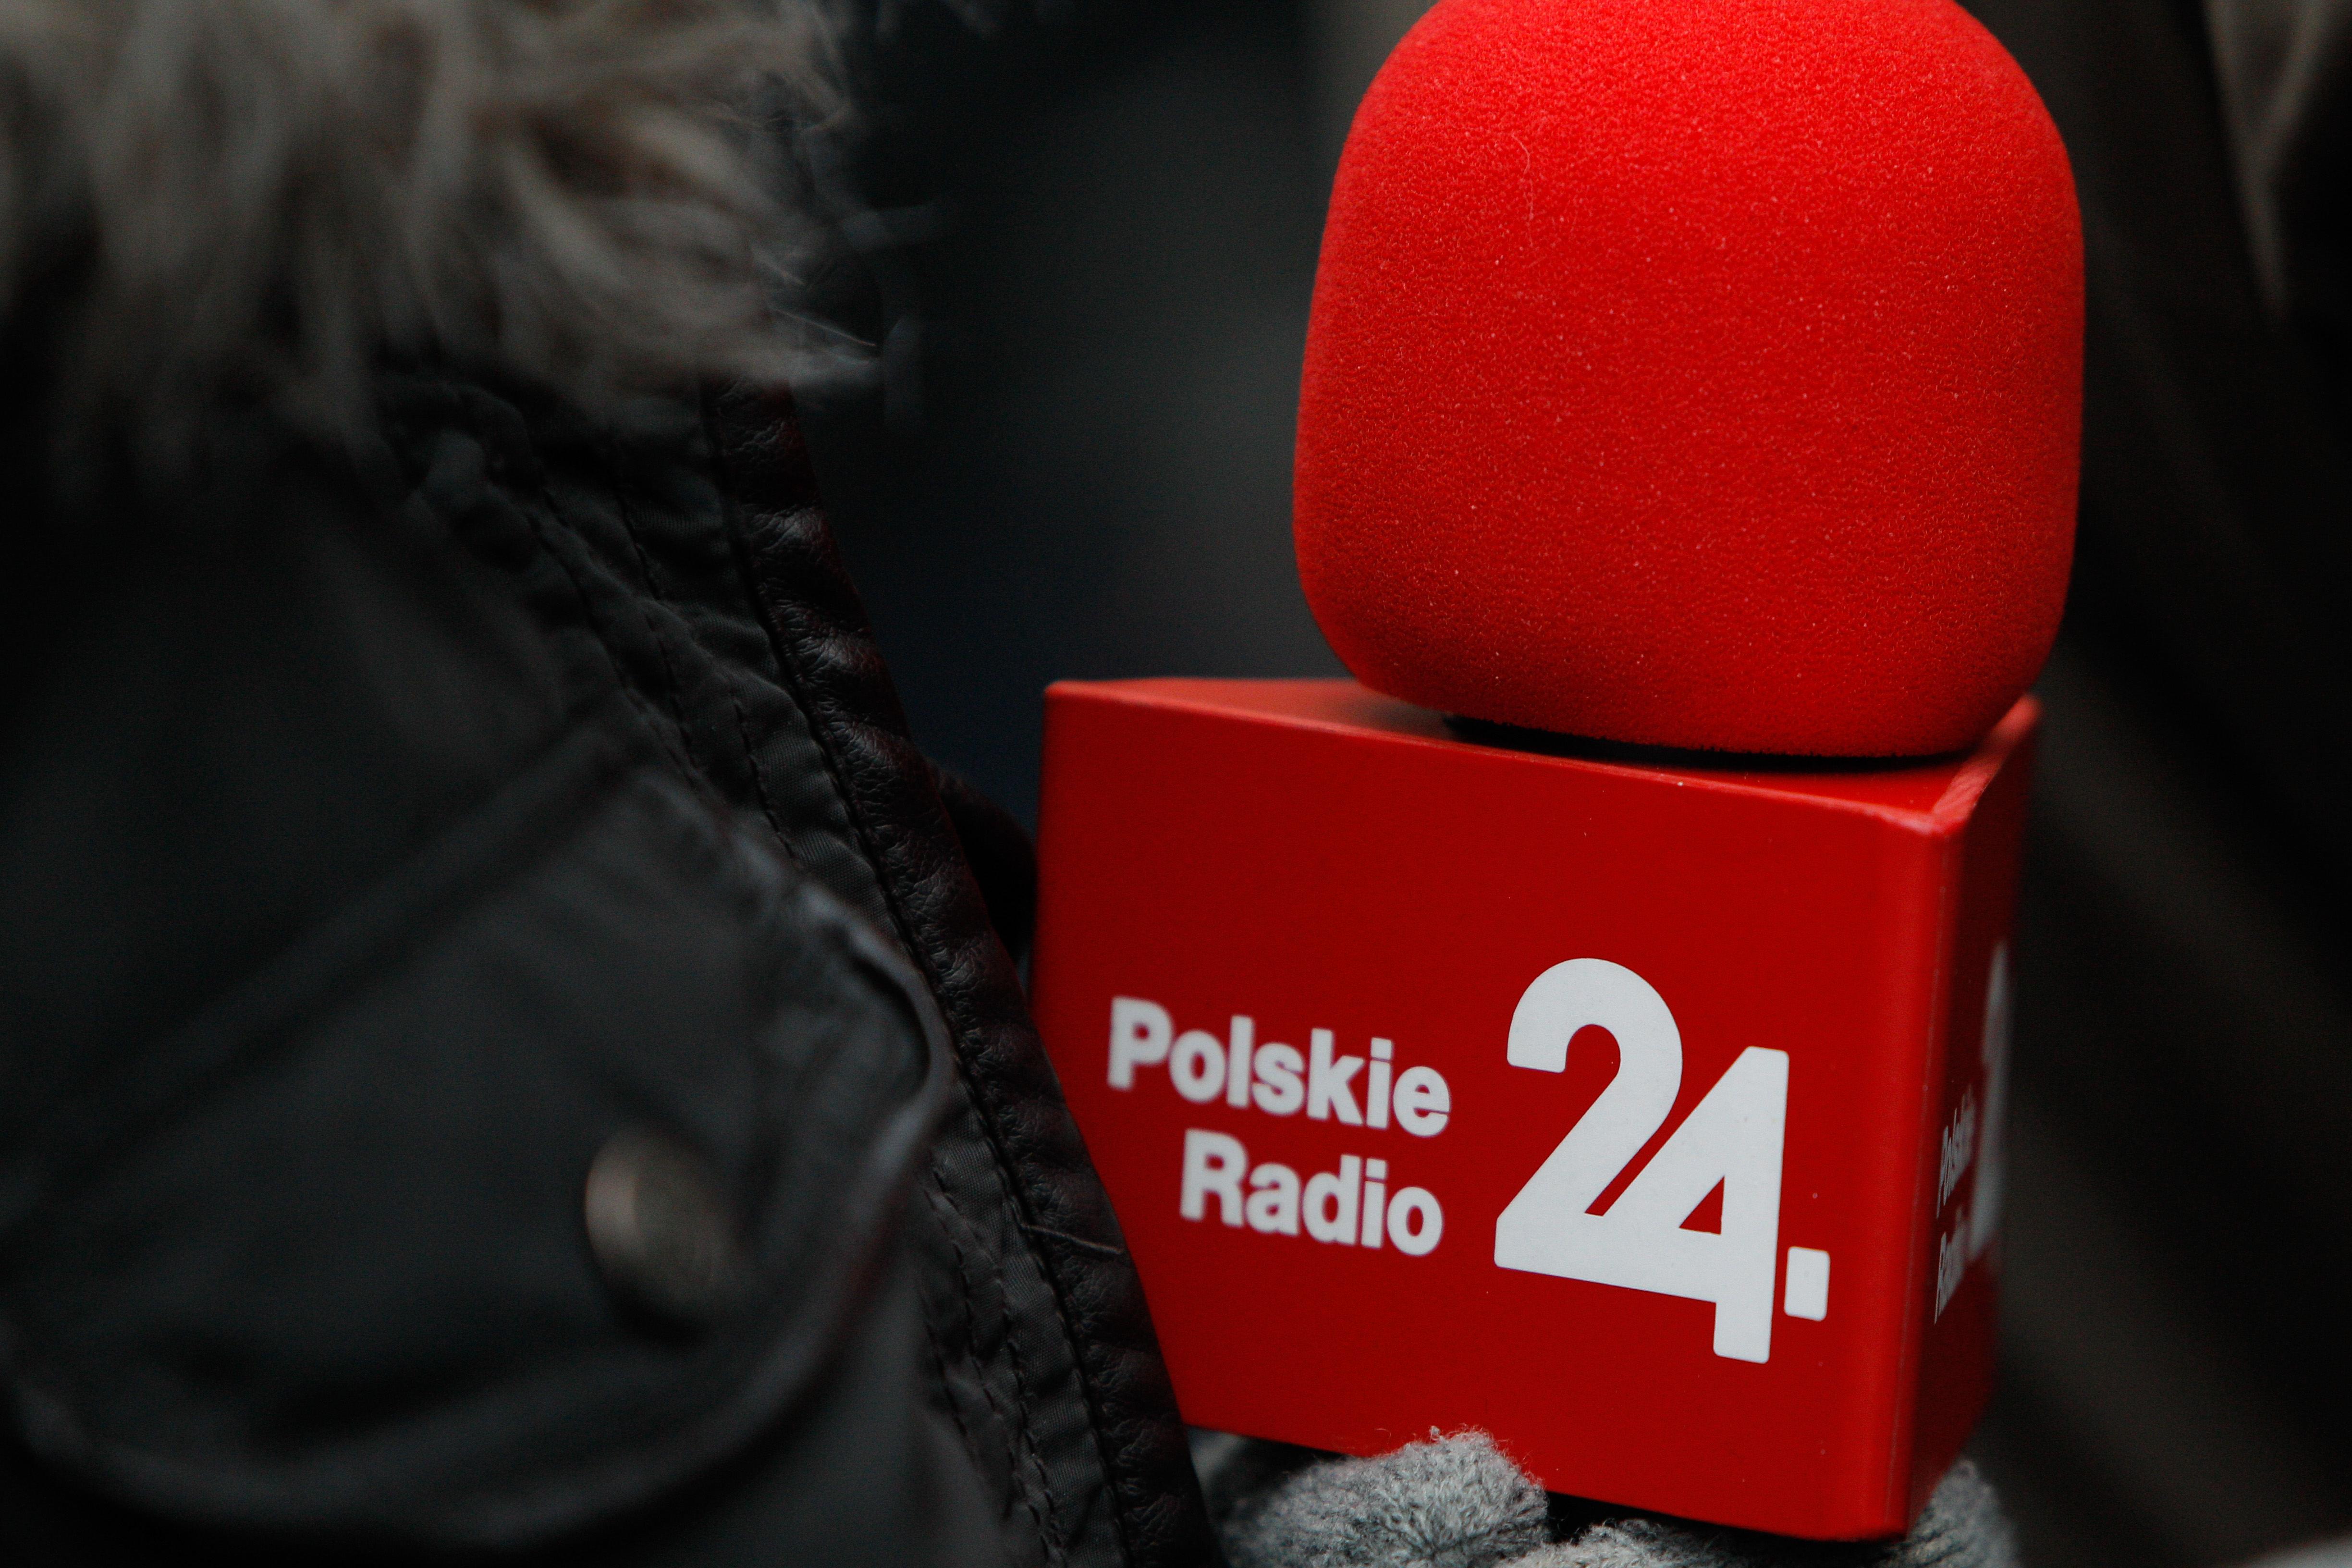 Dyrektor Polskiego Radia 24 odwołany. Bez zgody zarządu odebrał audycję  Andrzejowi Stankiewiczowi. Powód? Niewygodny dla rządu artykuł Onetu |  Newsweek